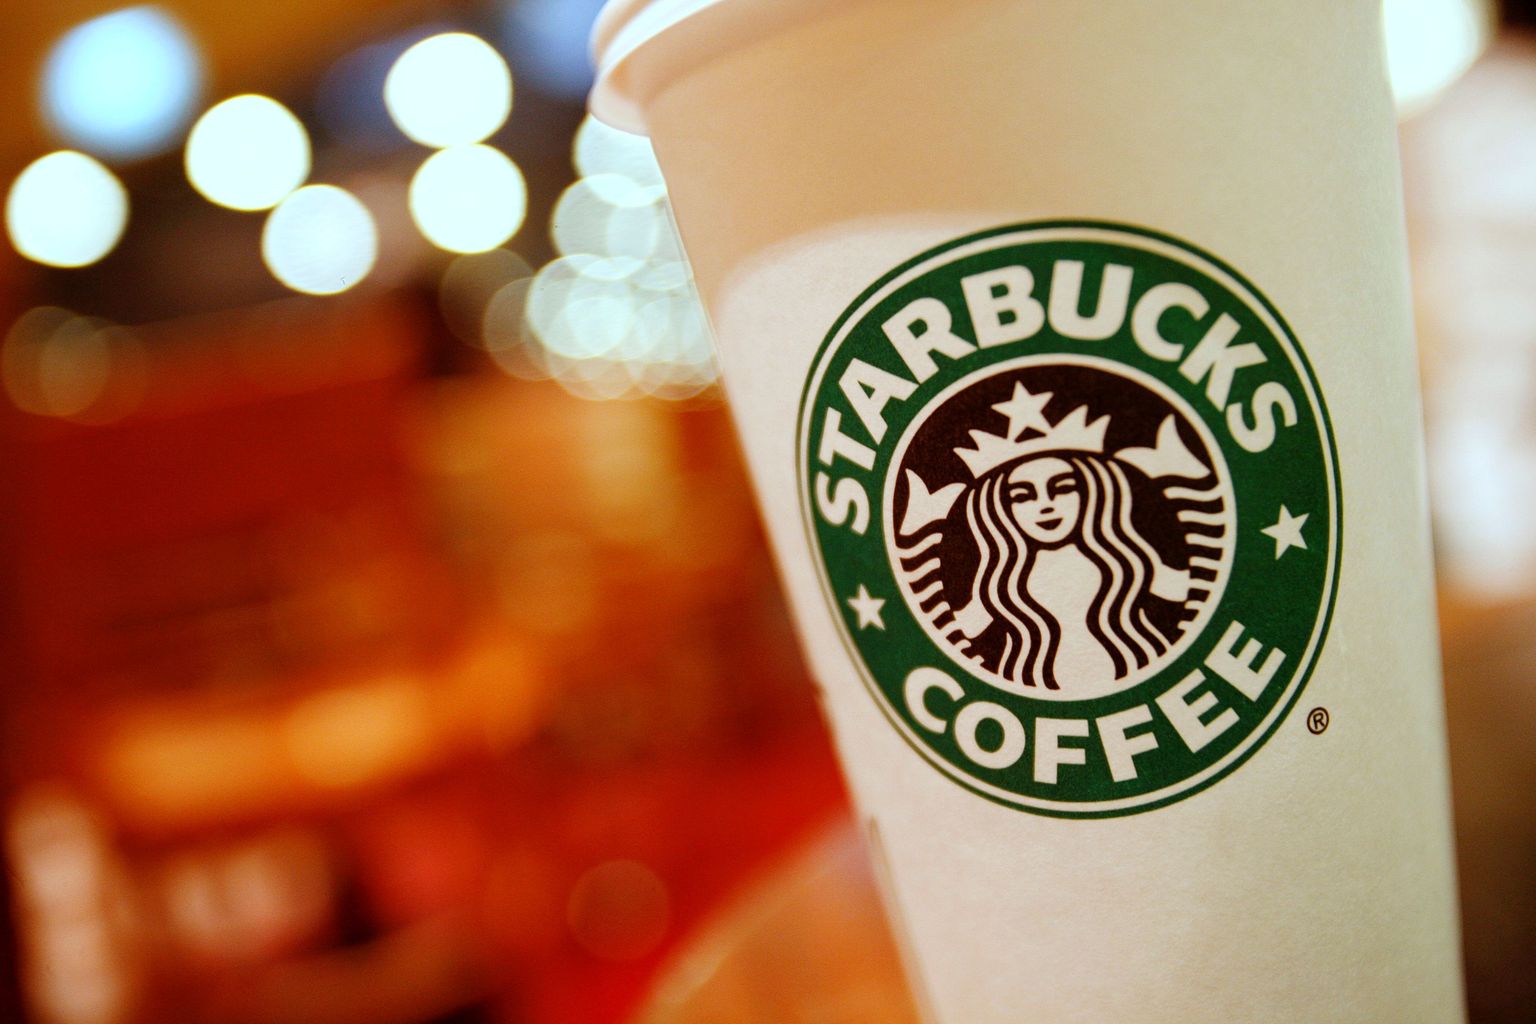 Väidetavalt petab Starbucks oma kliente pannes topsi liiga palju jääd.